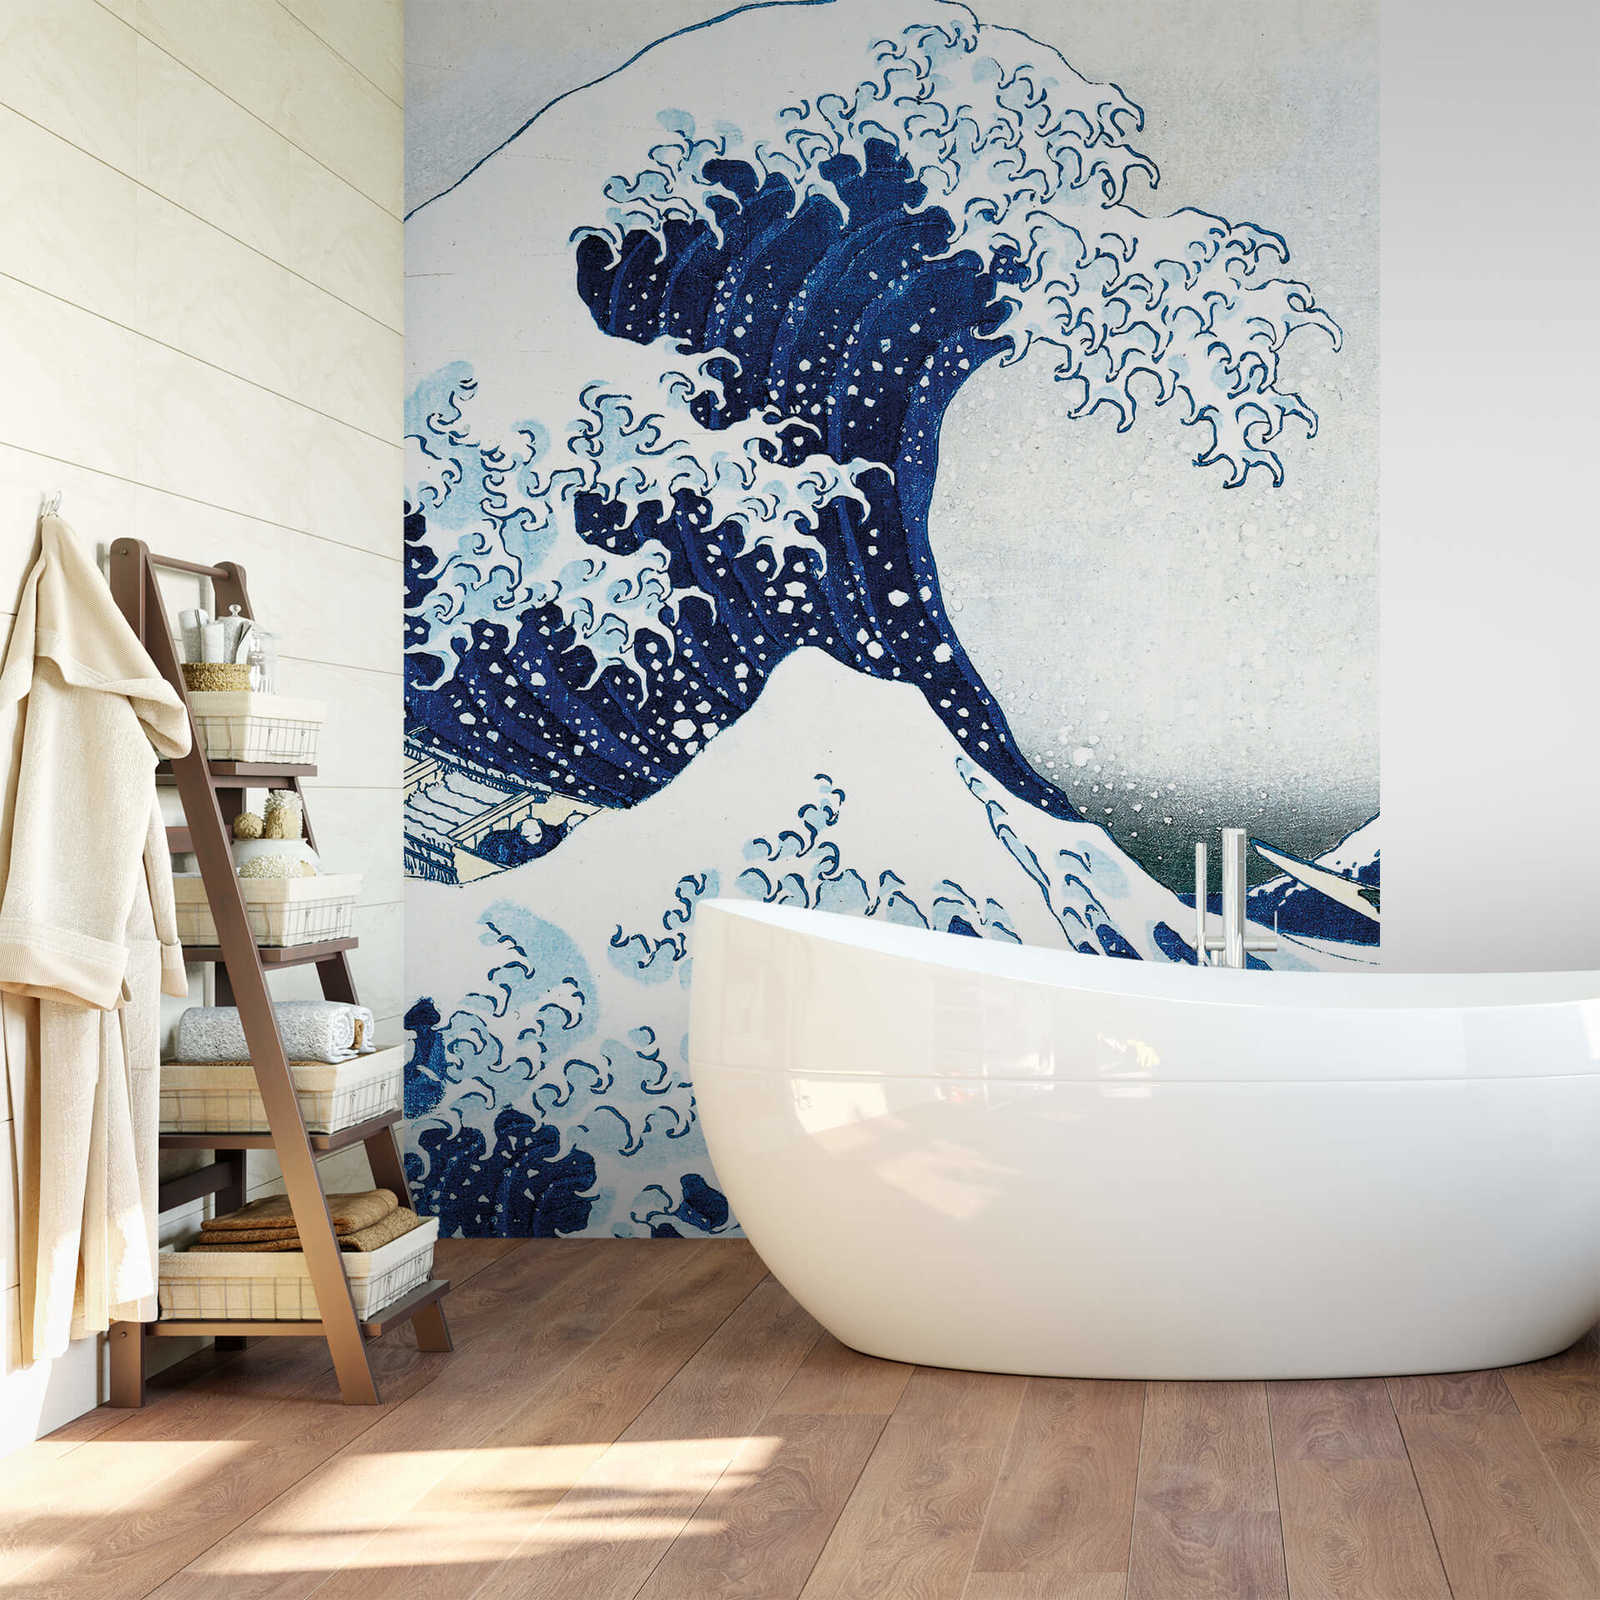             Mural de pared de onda estrecha dibujada en azul - Azul, Blanco
        